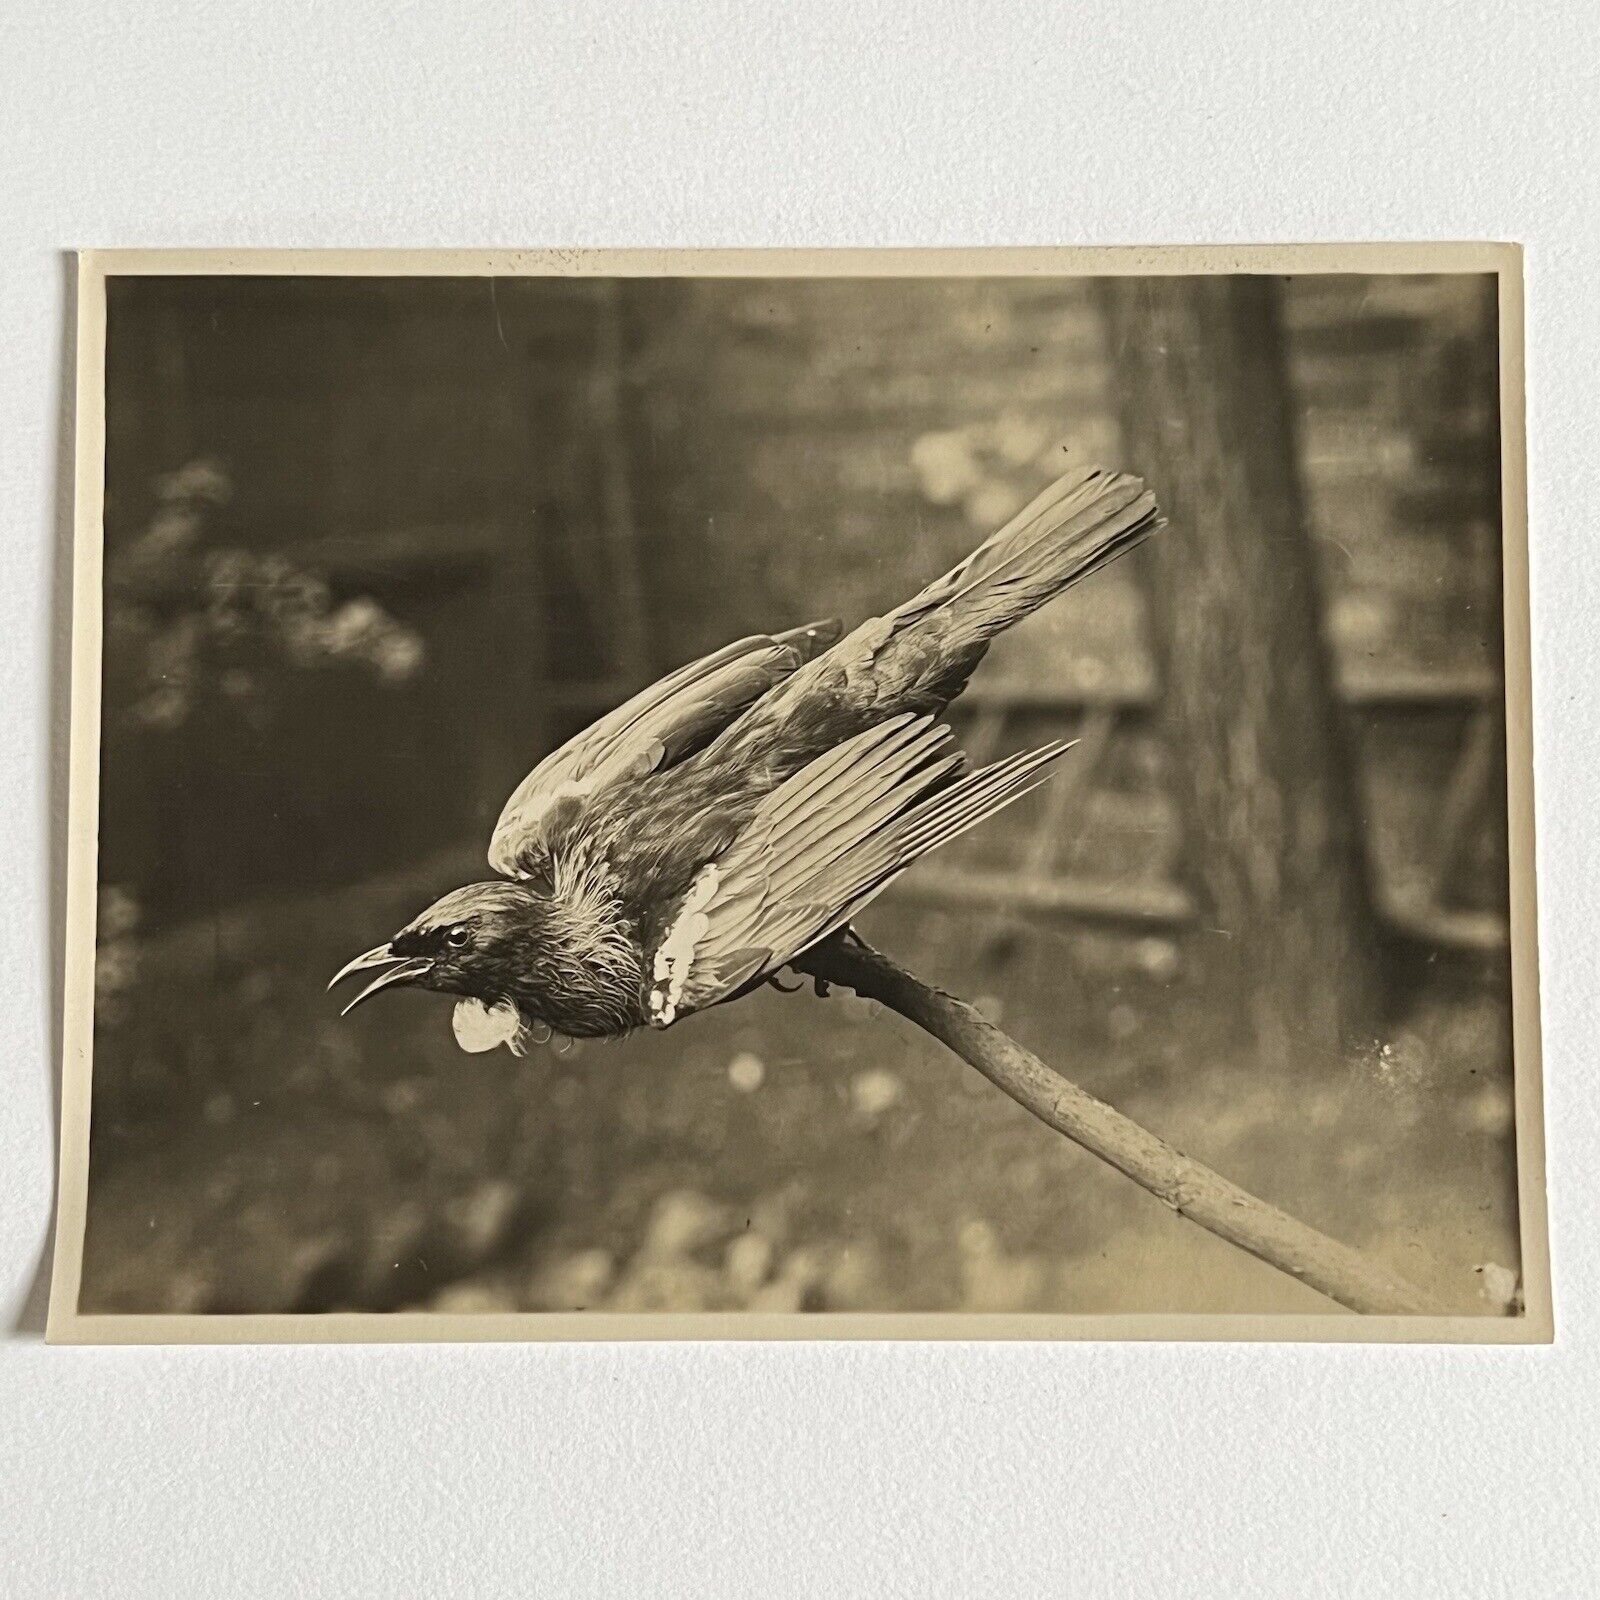 Antique Sepia Photograph Of Taxidermy Bird & Original Glass Negative Odd